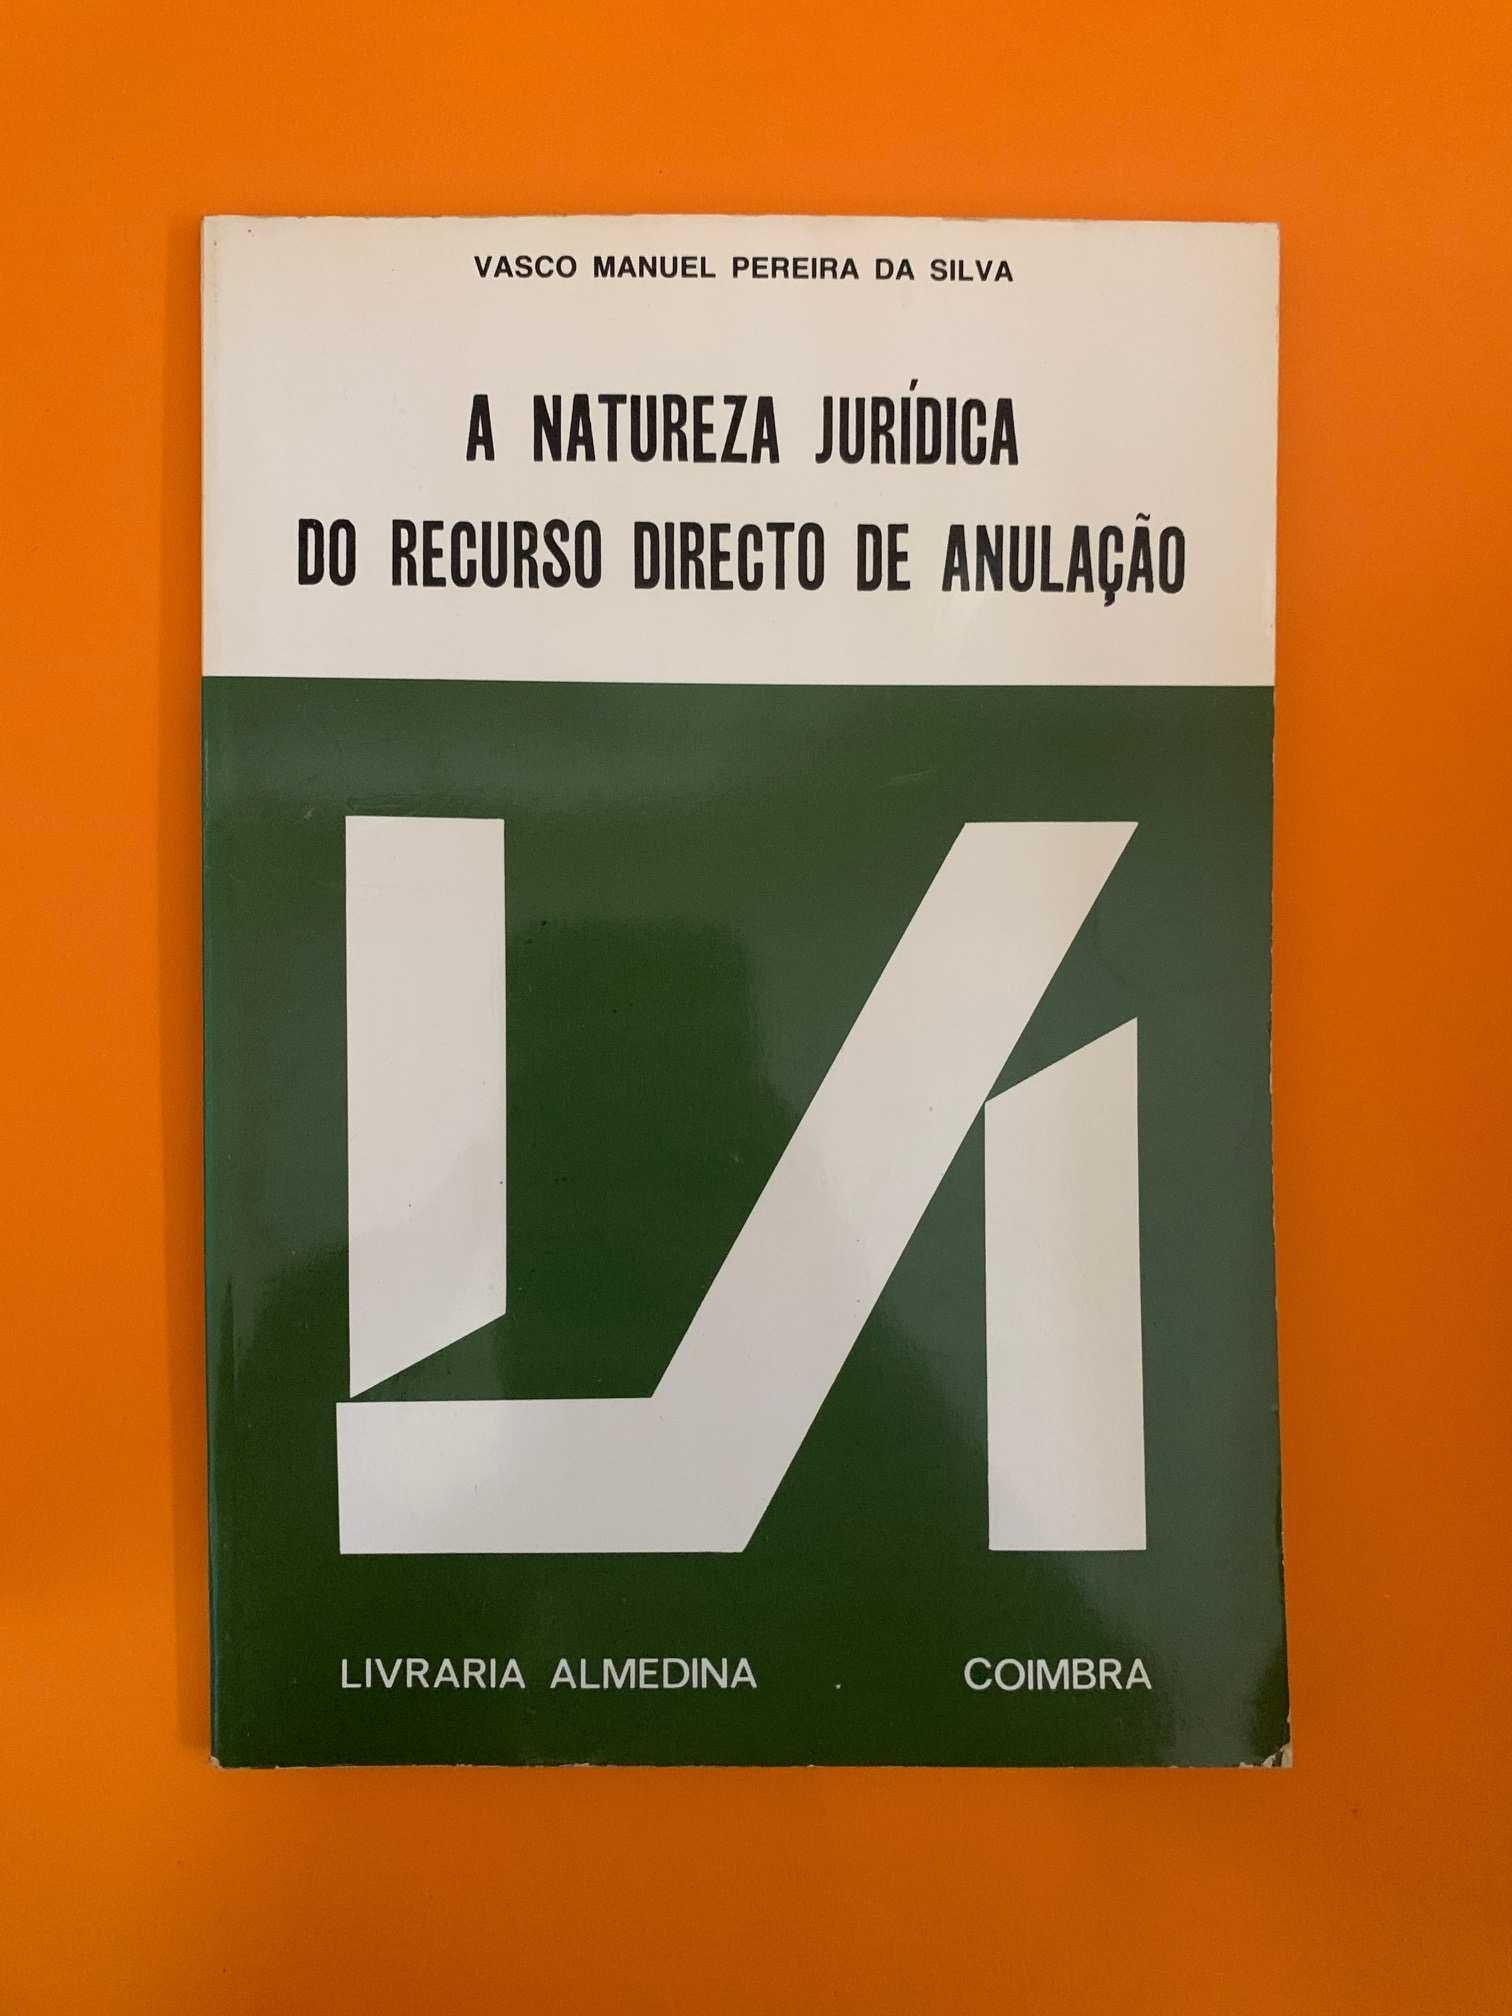 A Natureza Jurídica do Recurso Directo de Anulação - Vasco M. P. Silva